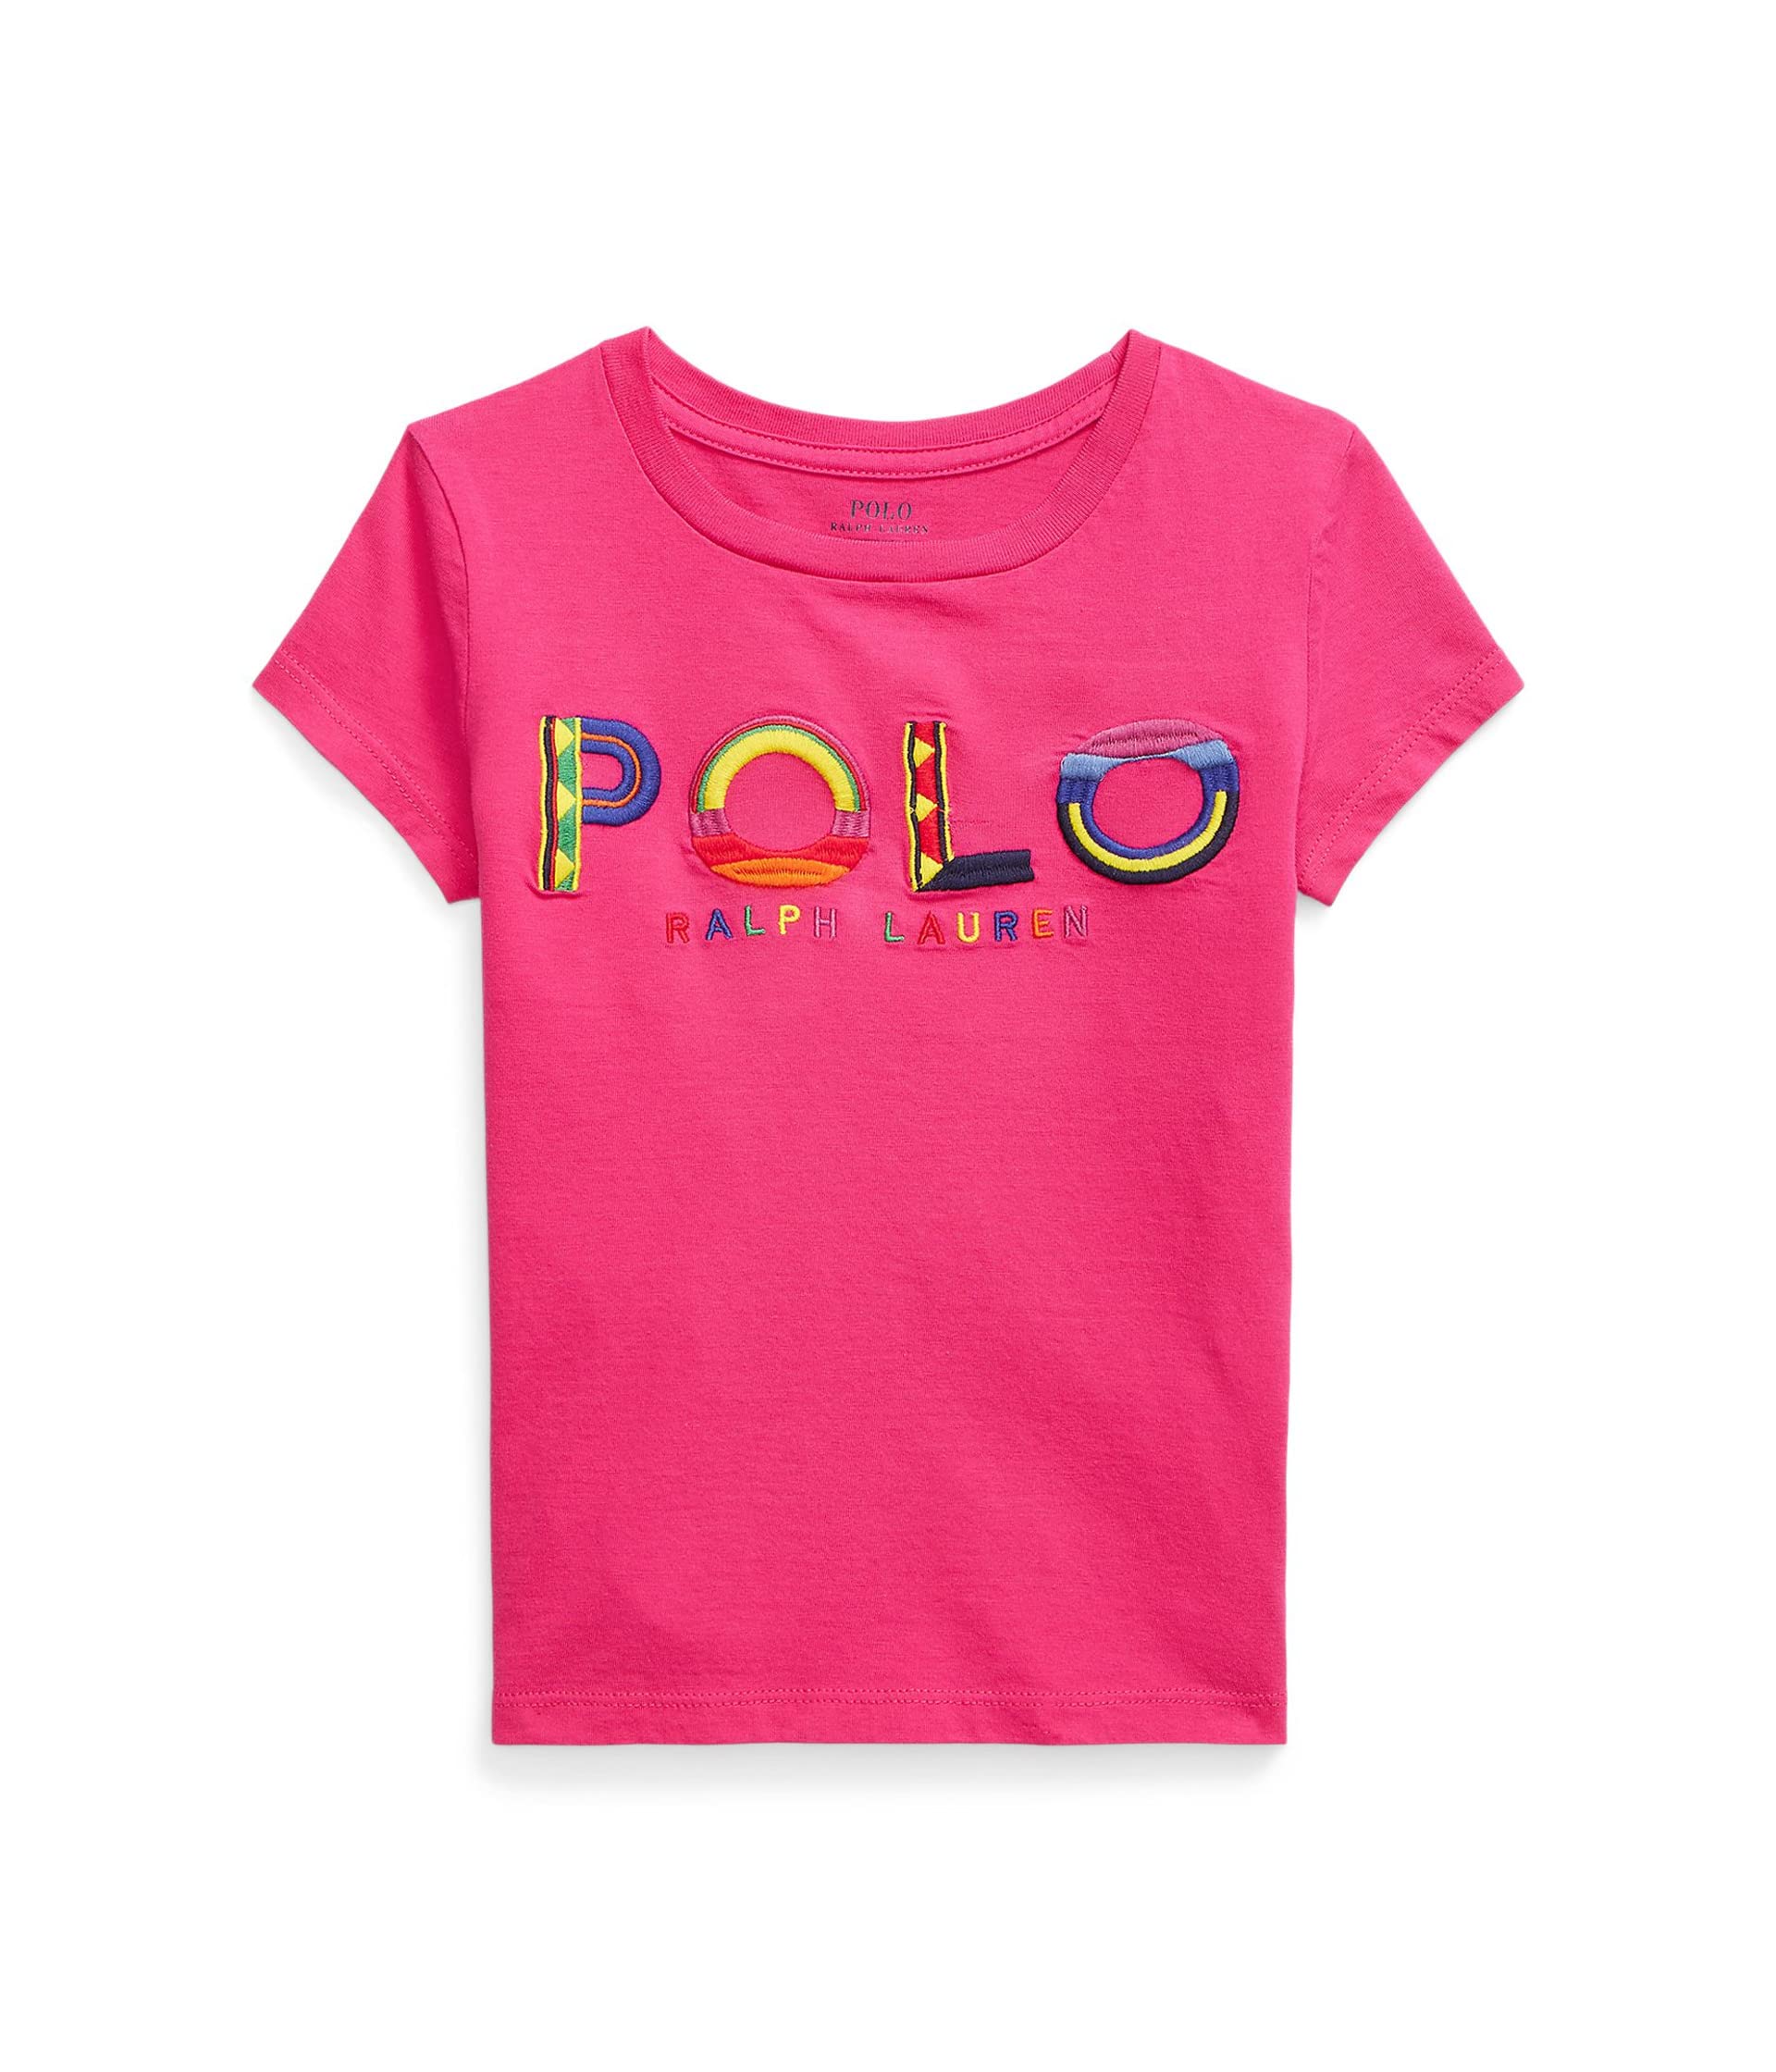 Футболка для детей Polo Ralph Lauren из хлопкового джерси с логотипом Polo Ralph Lauren